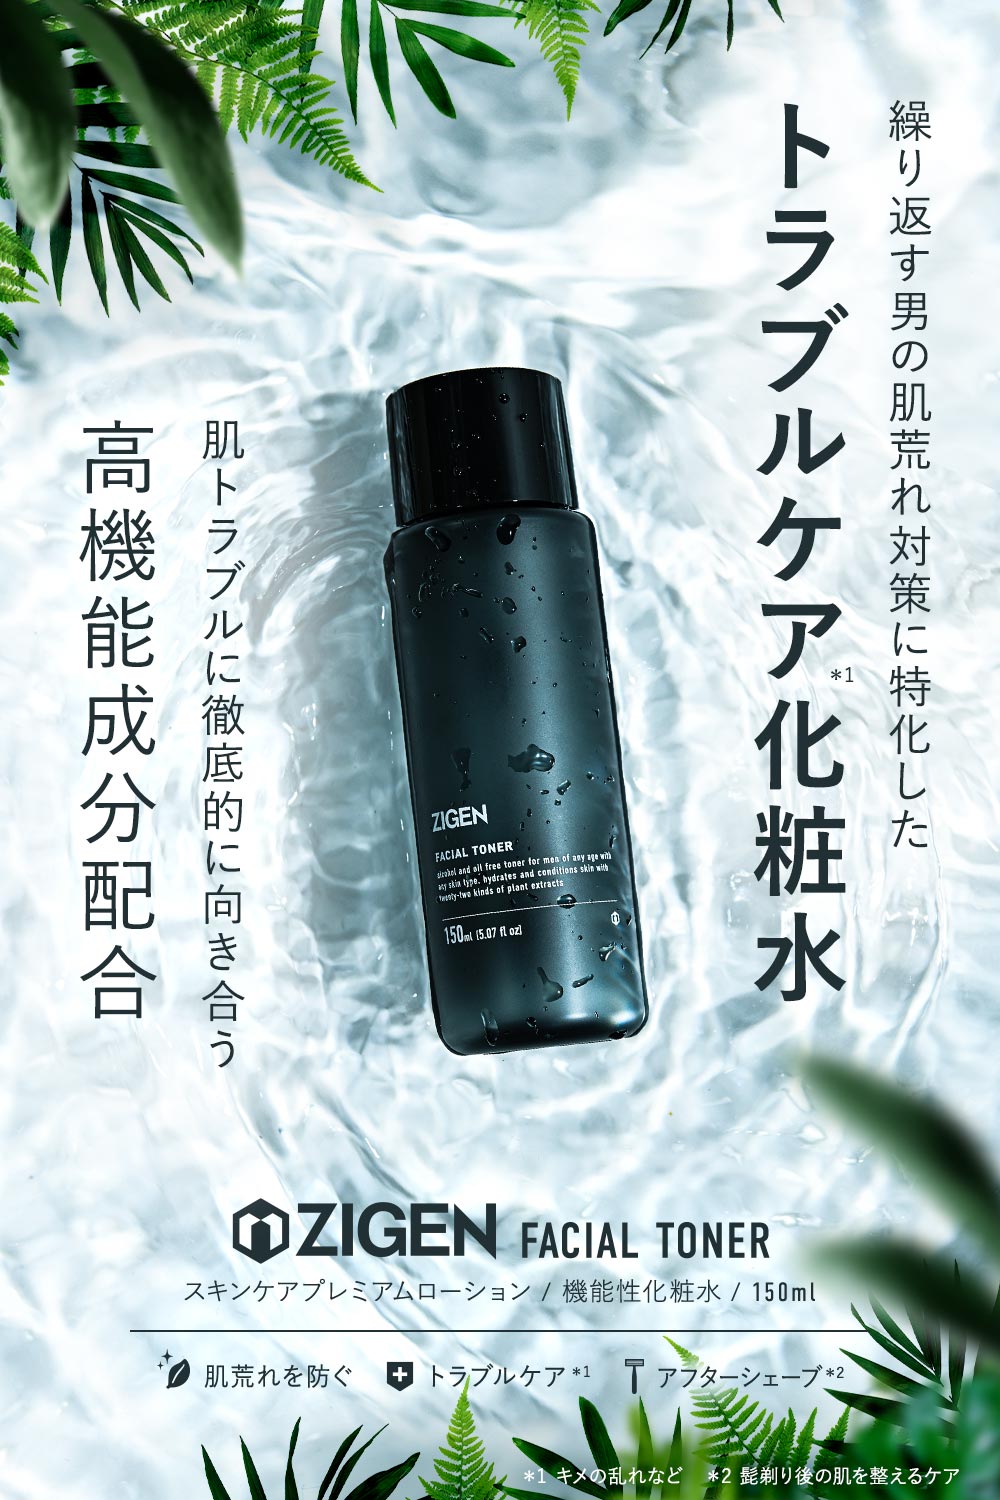 繰り返す男の肌荒れ対策に特化した化粧水「ZIGEN スキンケアプレミアムローション」